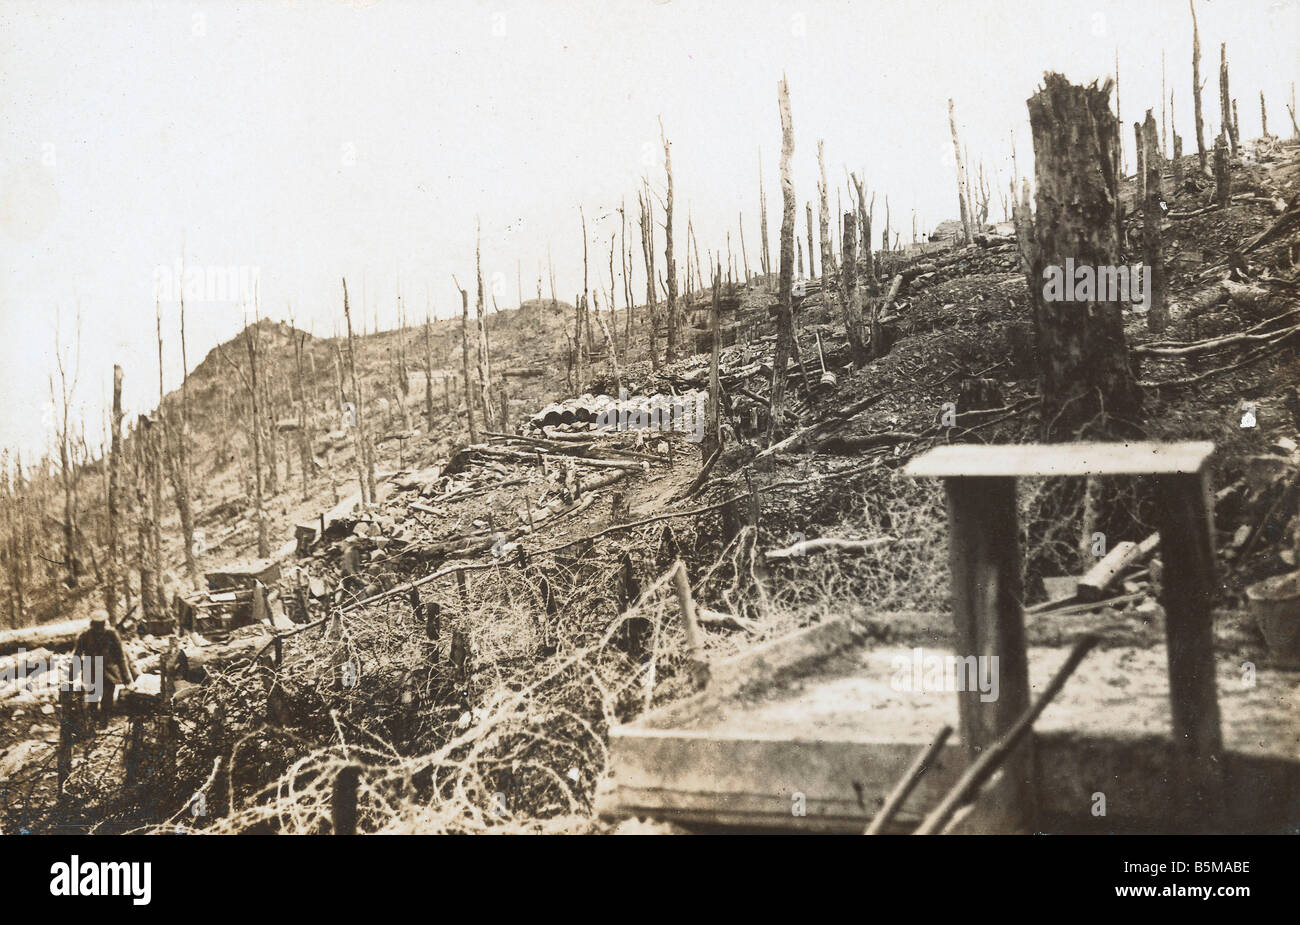 2 G55 W1 1916 17 WWI fronte occidentale battlefield 1916 Storia WWI Western vista frontale di un campo di battaglia al fronte occidentale distruggere Foto Stock